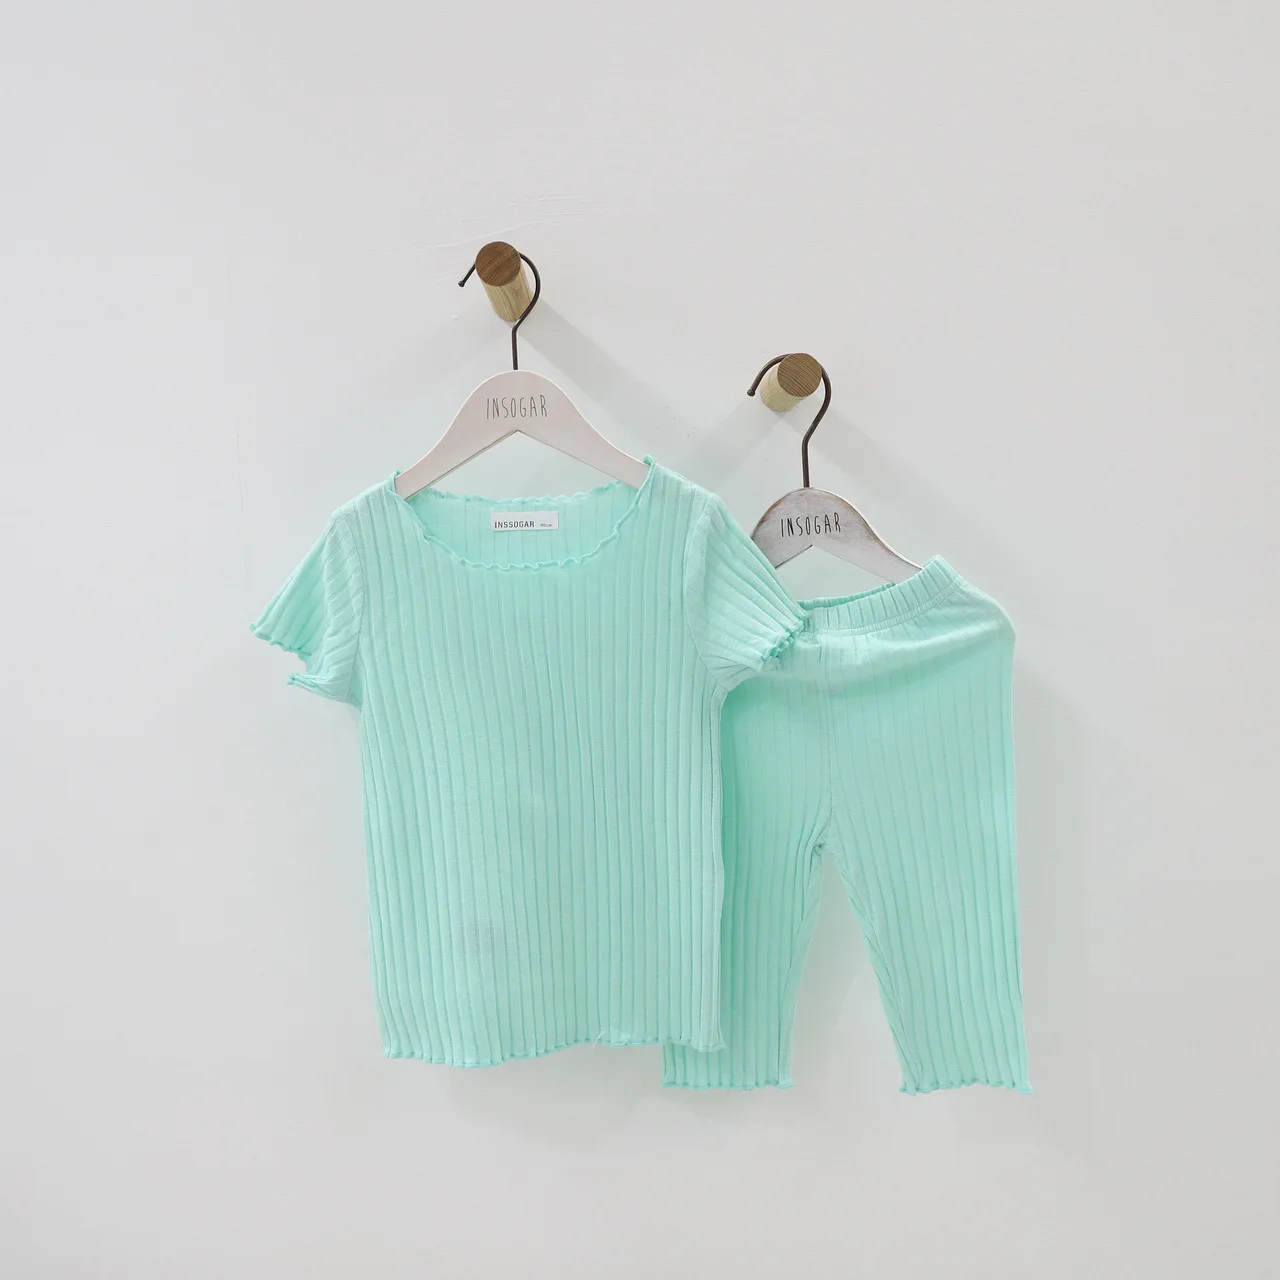 Наряды для Дня благодарения для малышей г., летний детский пижамный комплект для девочек, костюм с жилетом - Цвет: Зеленый